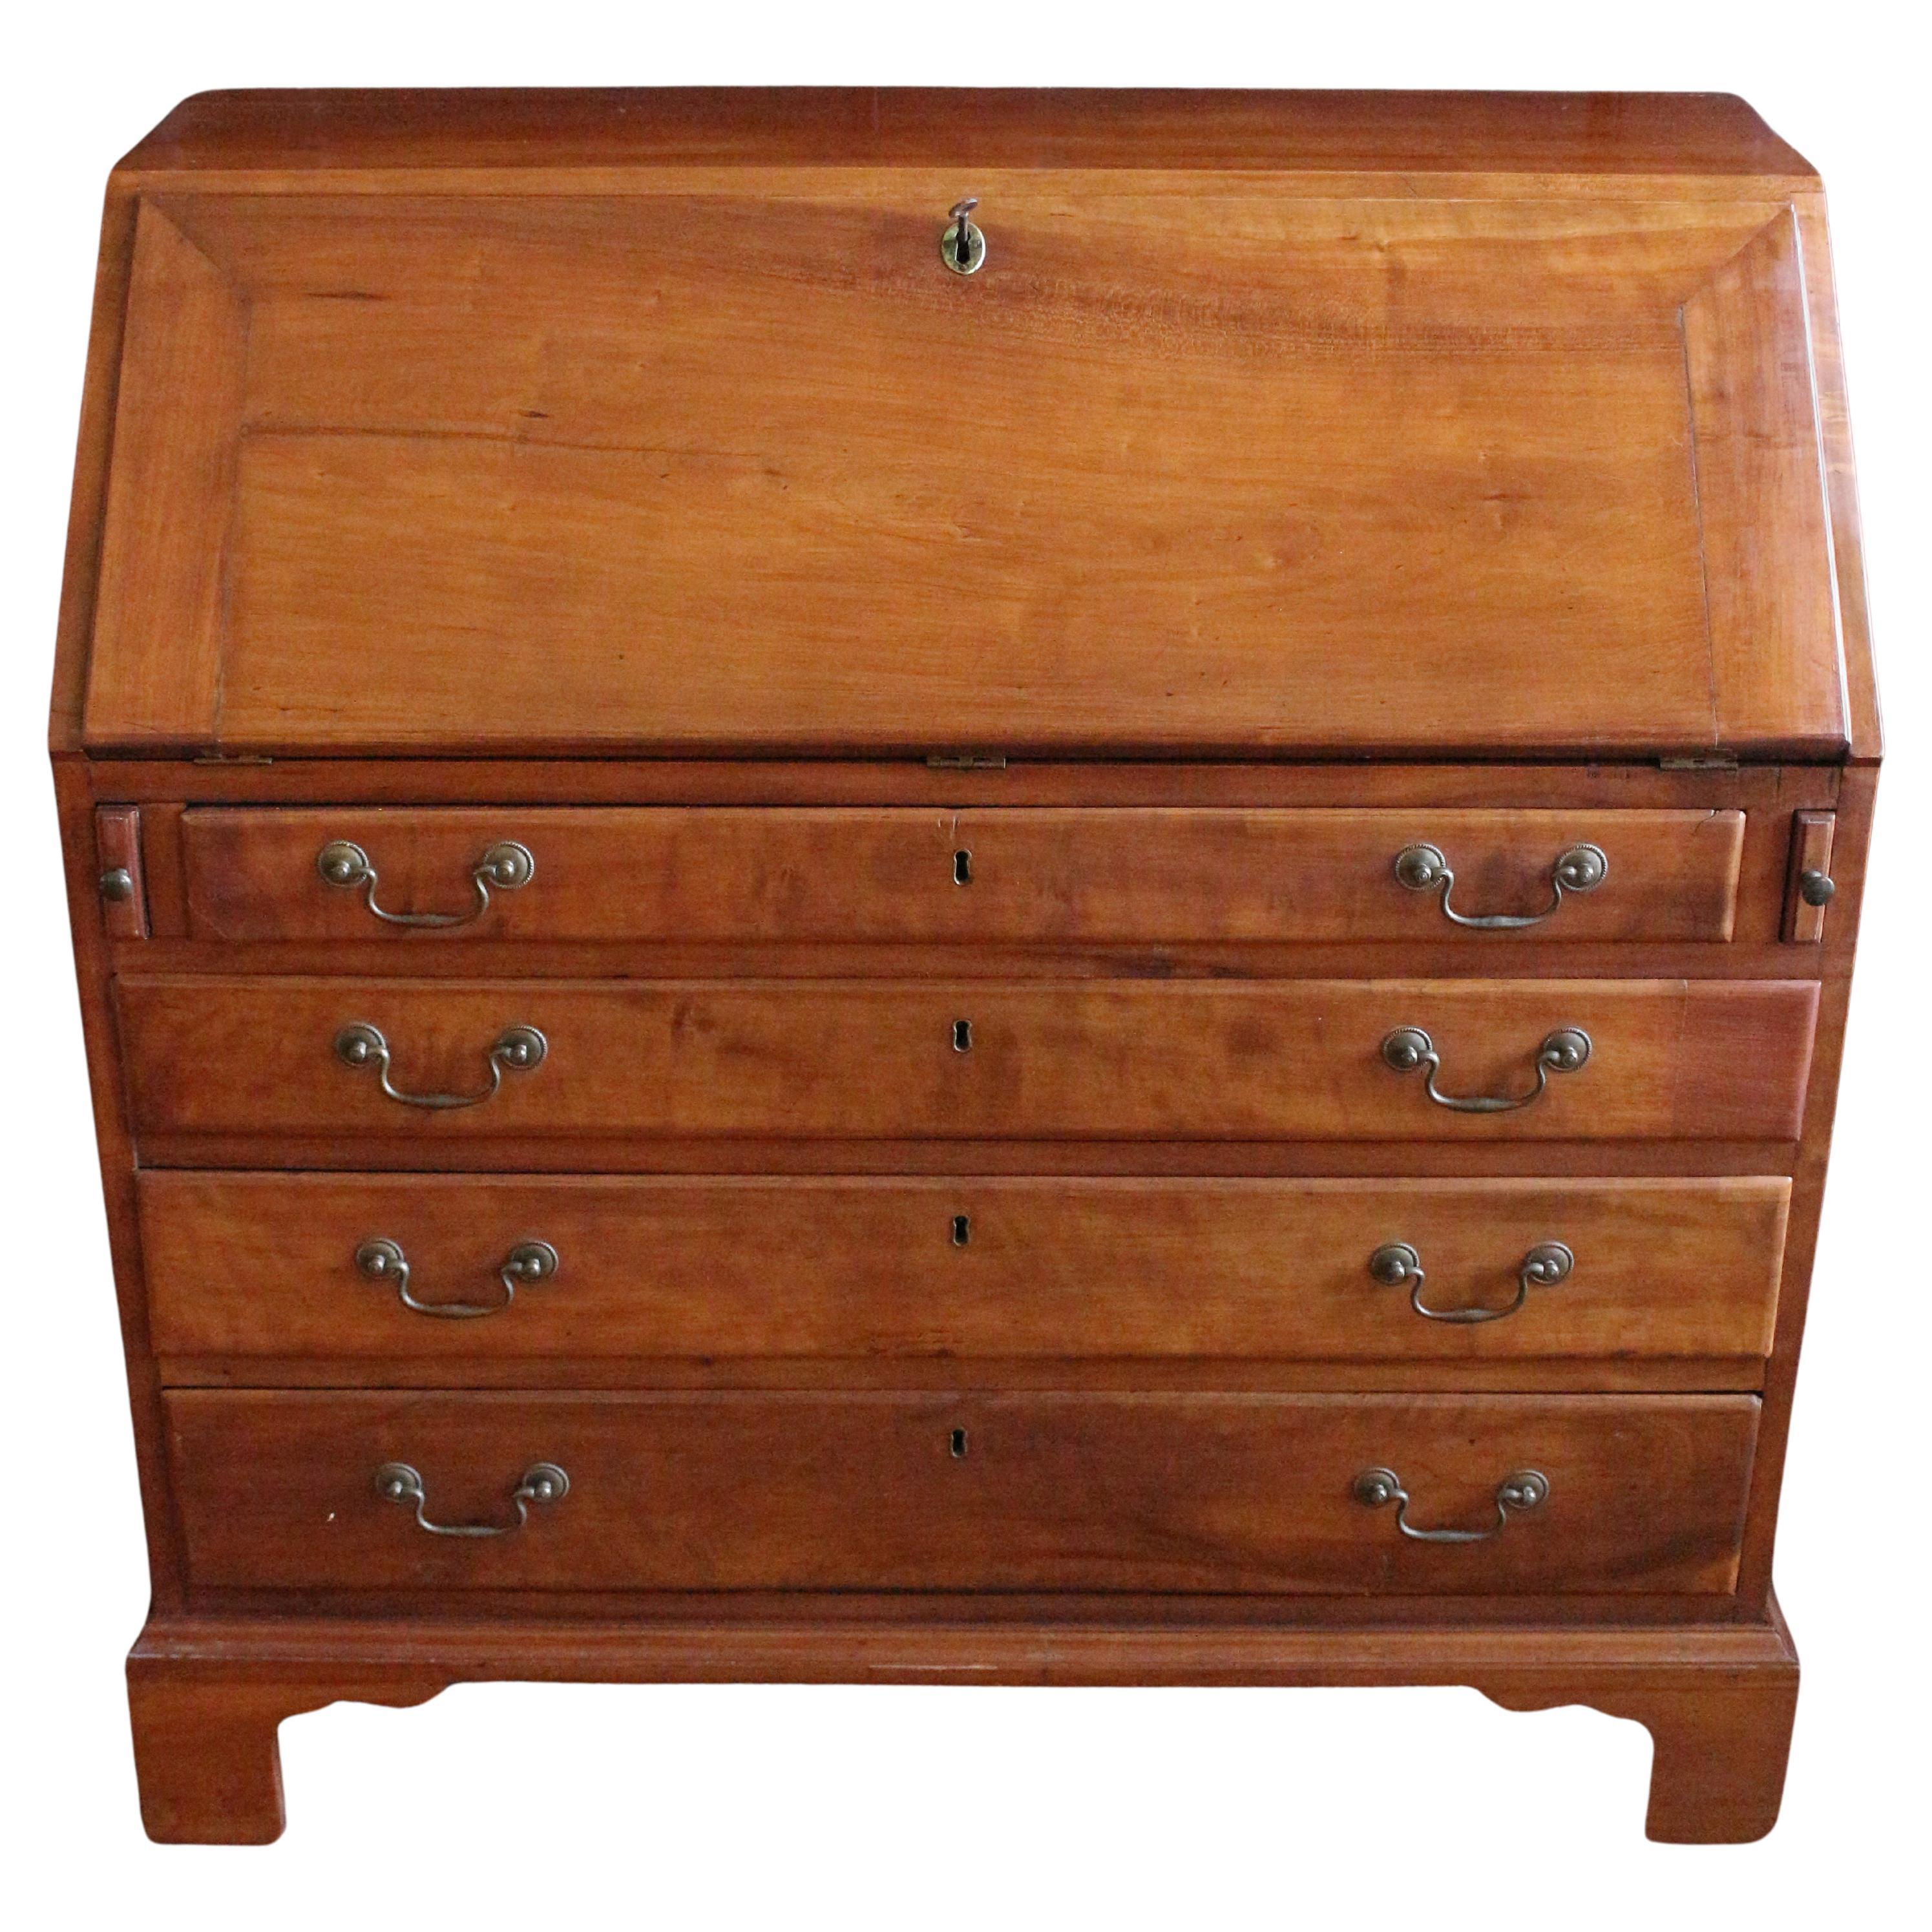 Circa 1780-1810 American Slant-Front Desk For Sale